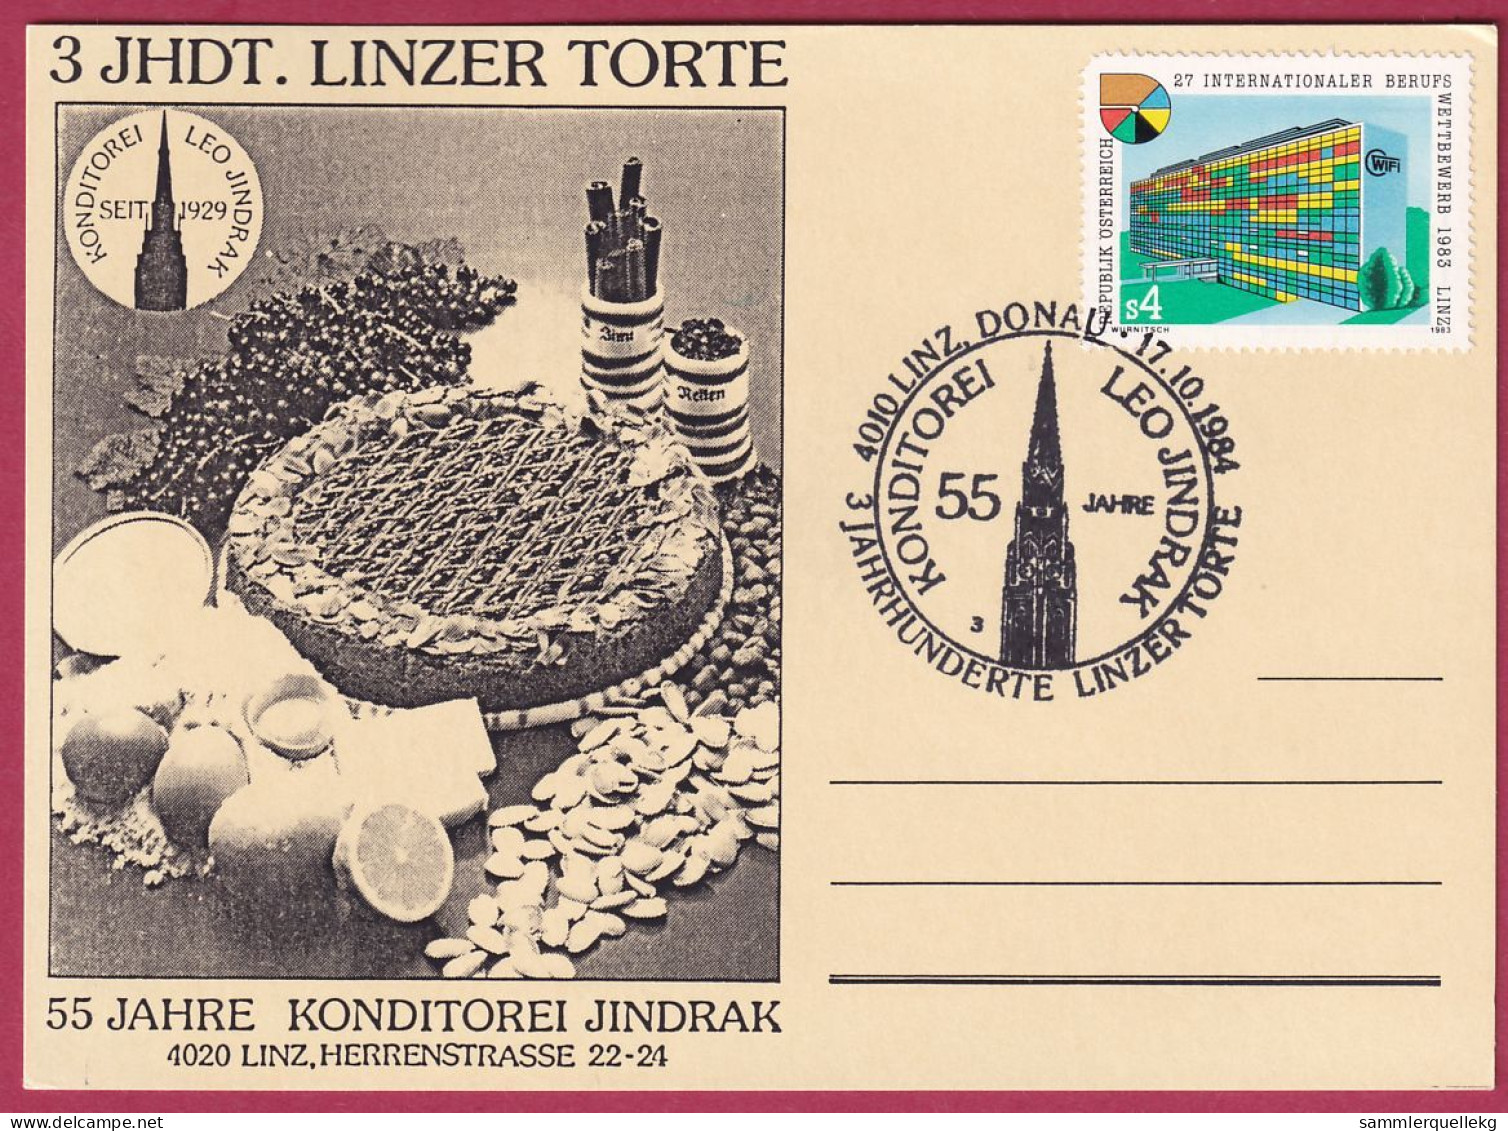 Österreich MNr.1747 Sonderstempel 17. 10. 1984, 55 Jahre Konditorei Jindrak - Linzer Torte - Storia Postale